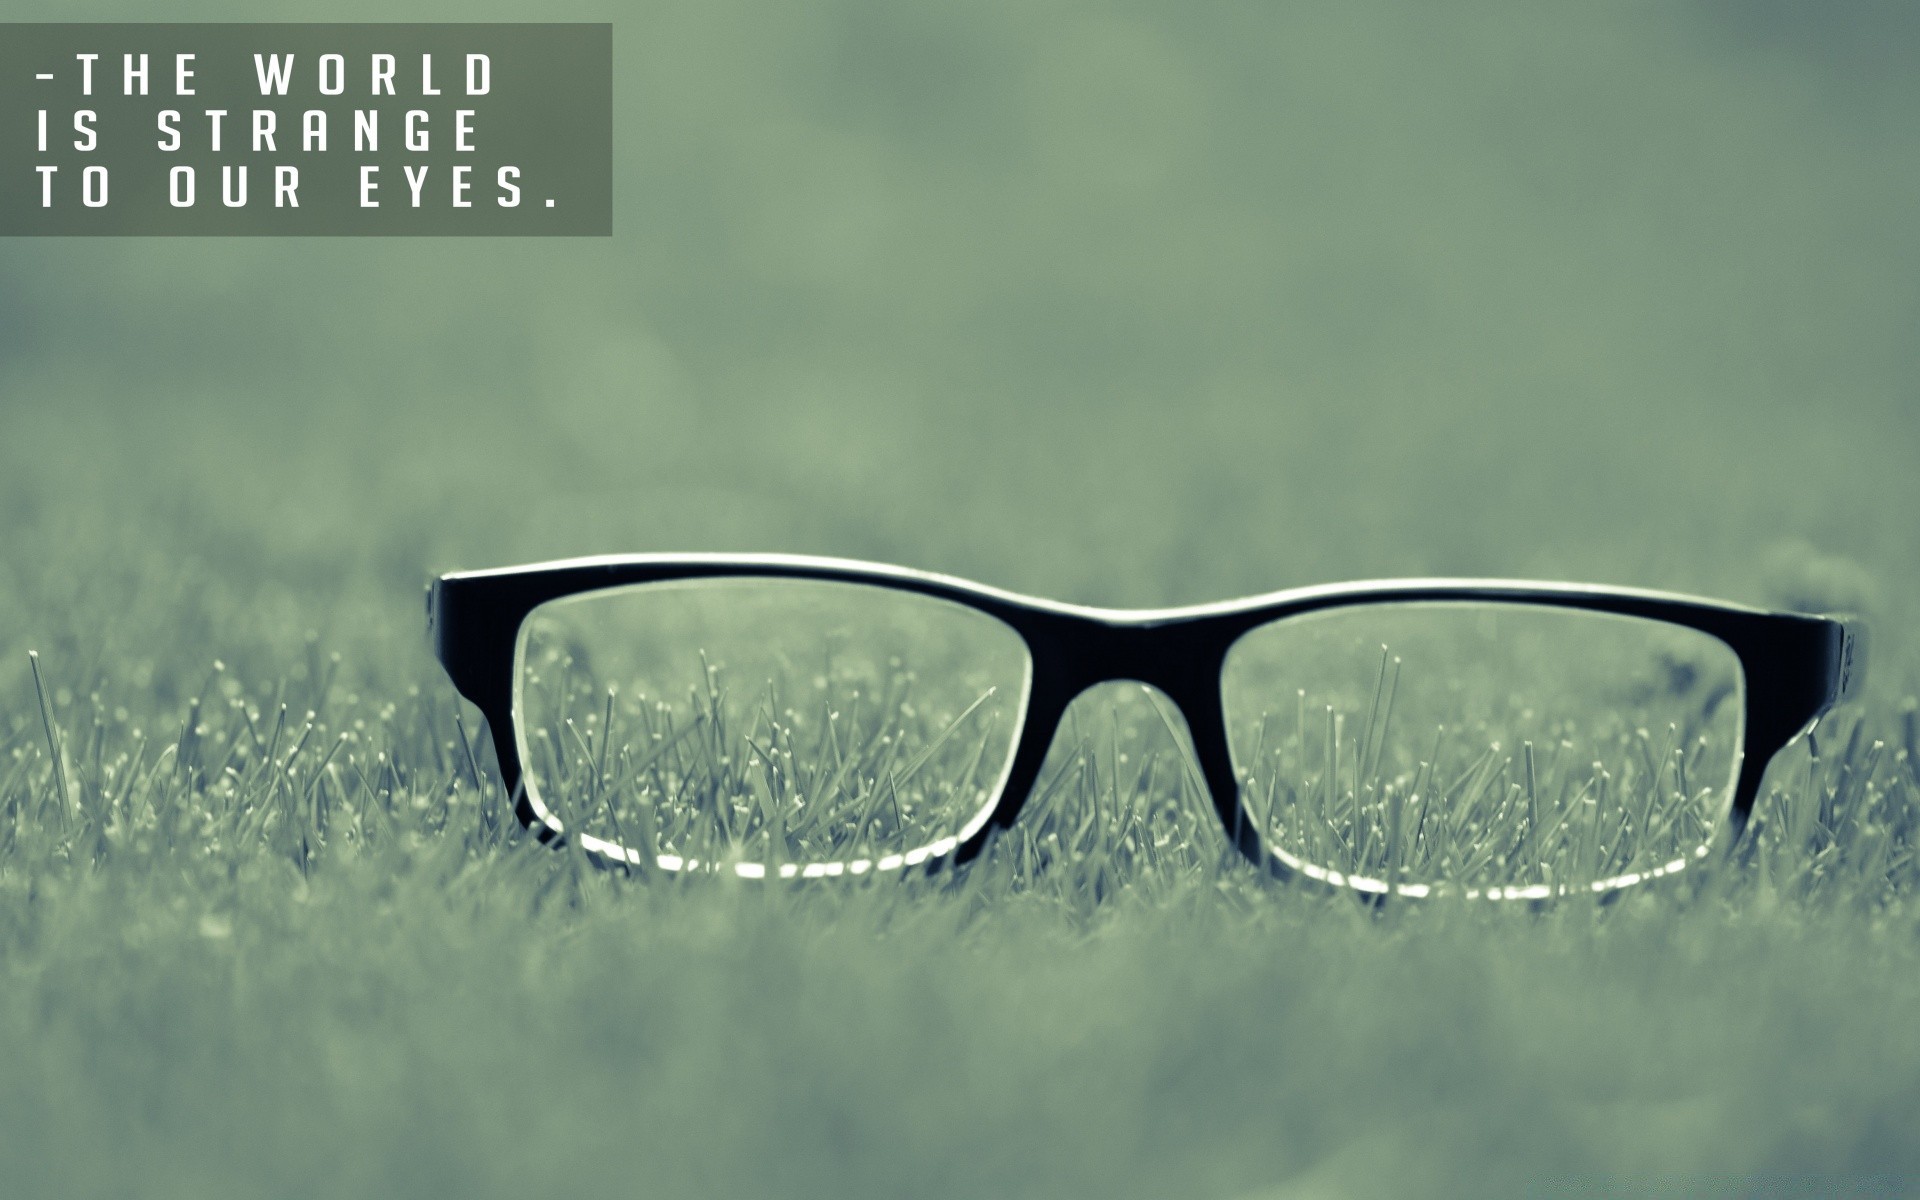 креатив солнцезащитные очки очки очки зрение лето объектив хорошую погоду солнце защита очки стекло фоторамка пластик отражение носить видение ультрафиолетовое круто природа